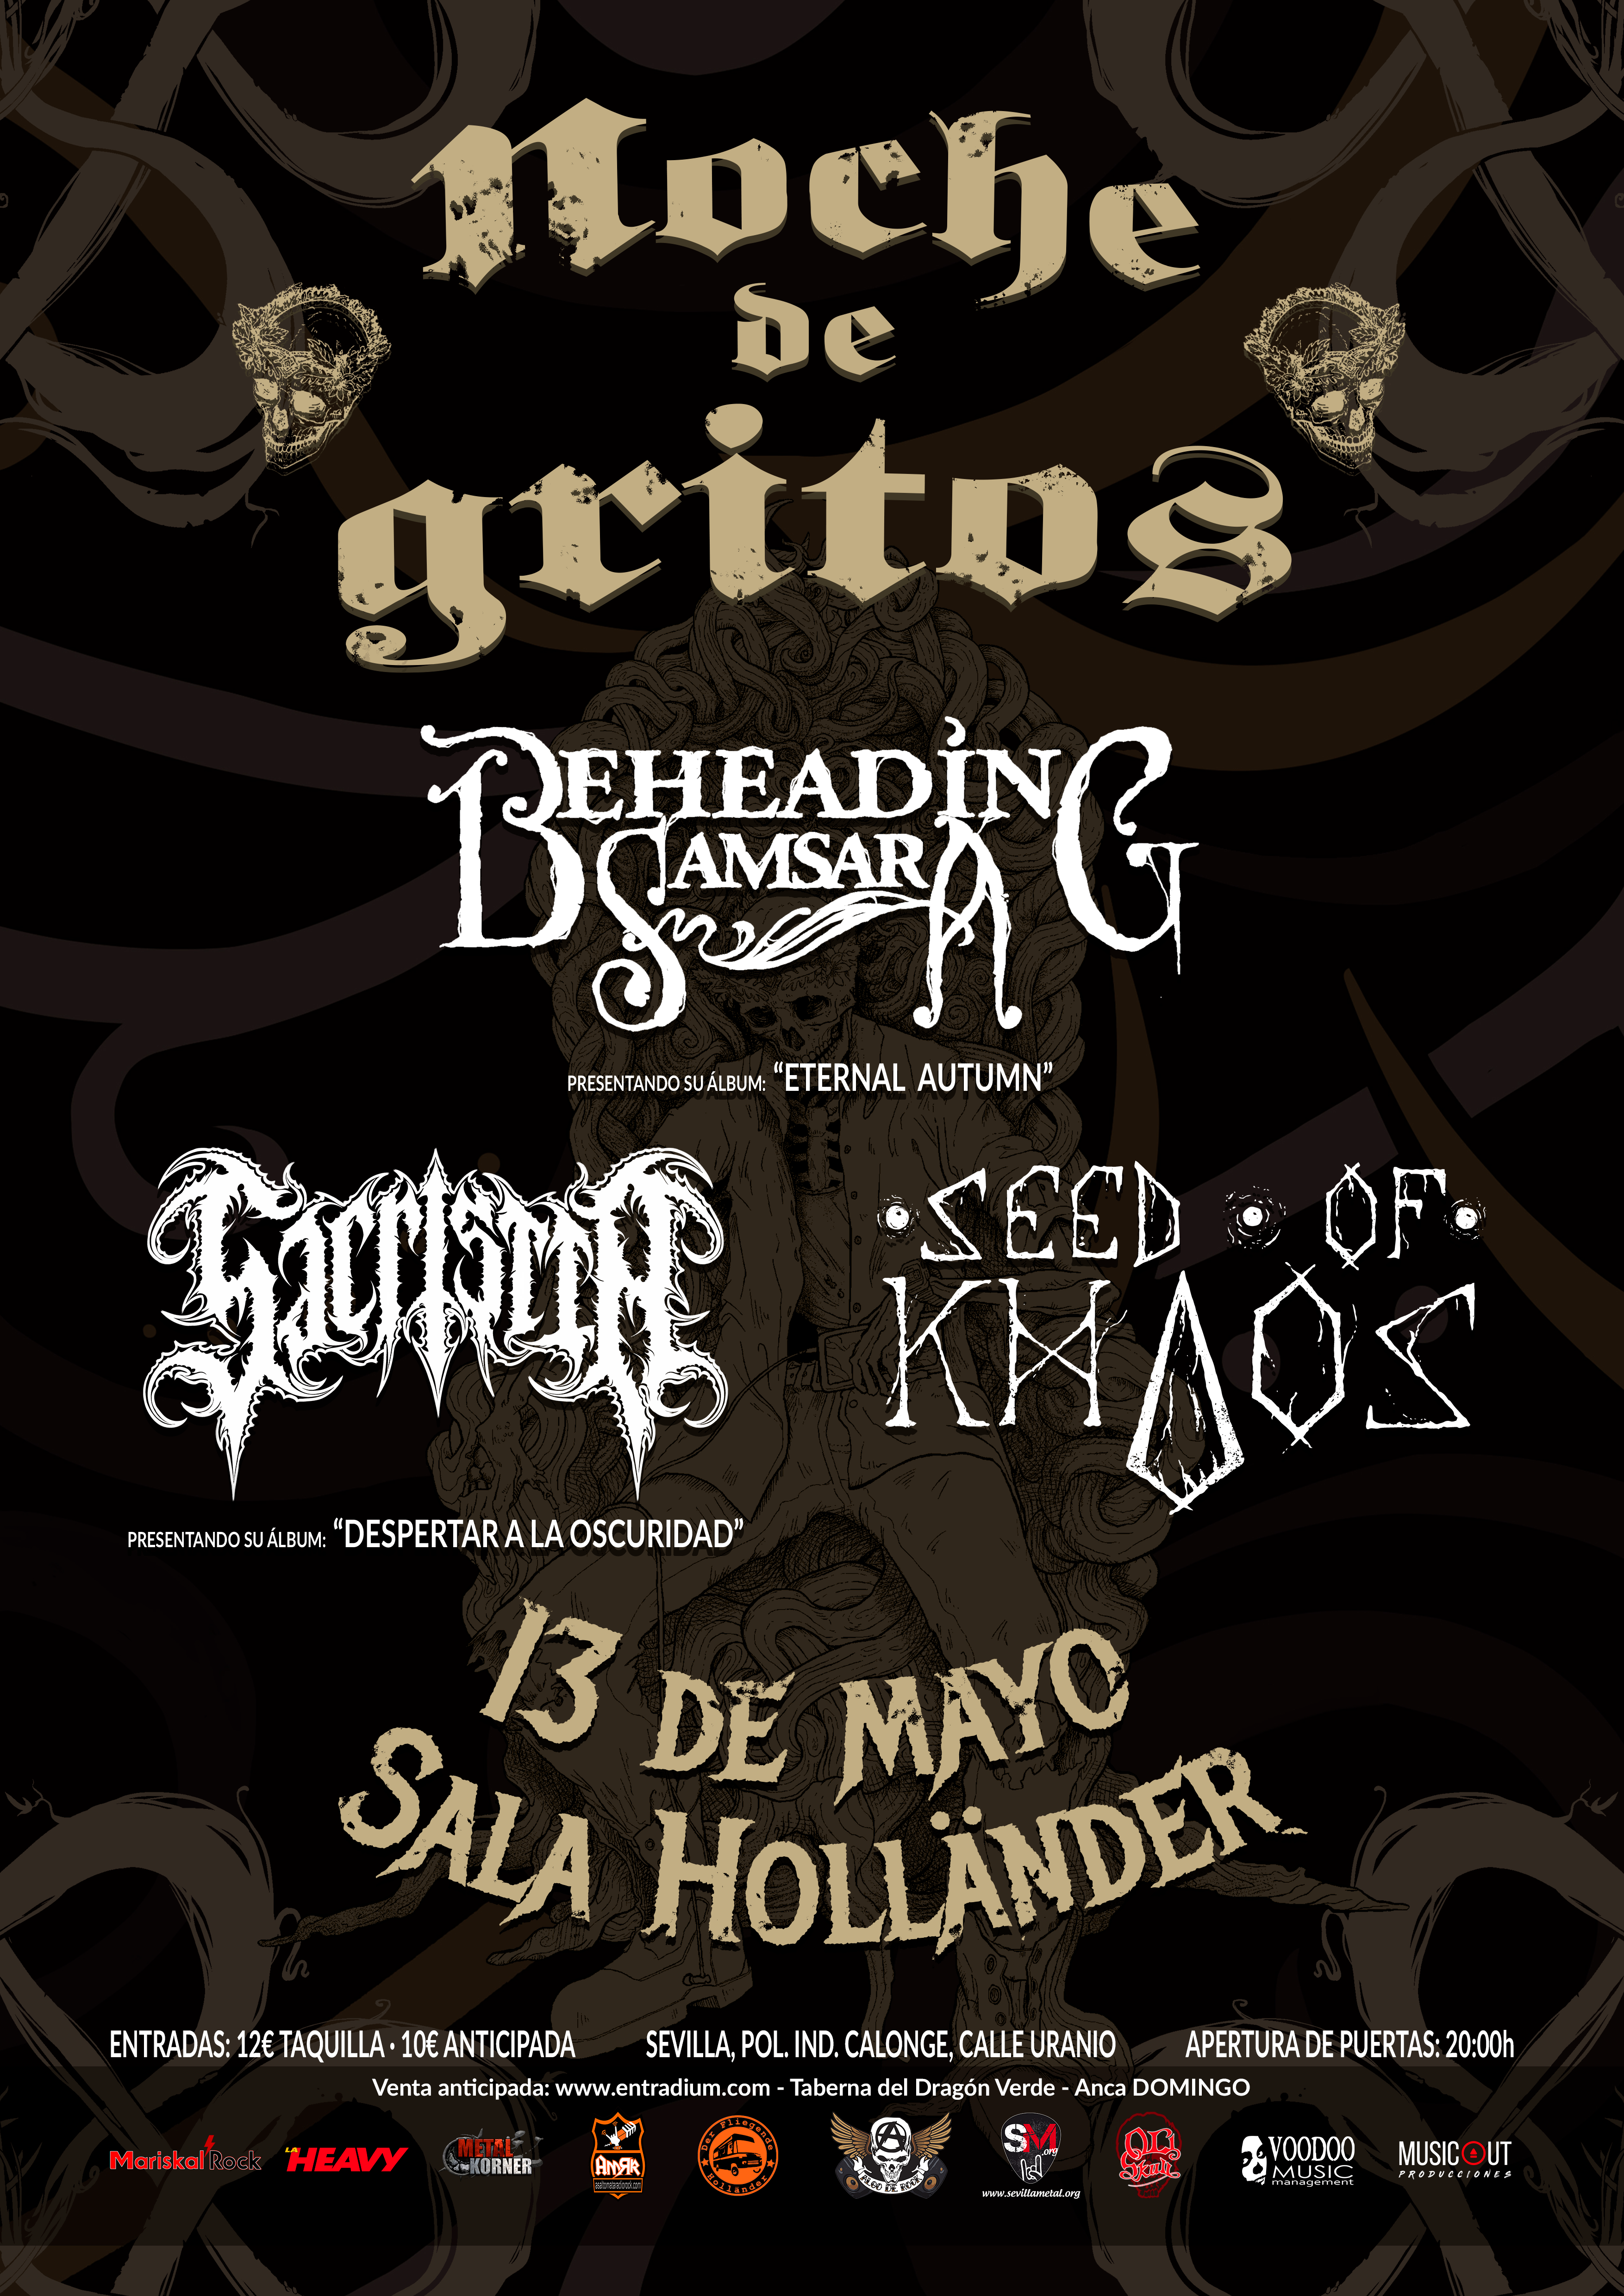 Presentamos el concierto Noche de Gritos que tendrá lugar el 13 de mayo en Sevilla (Sala Höllander) con las bandas Sacristía – Beheading Samsara y Seed Of Khaos